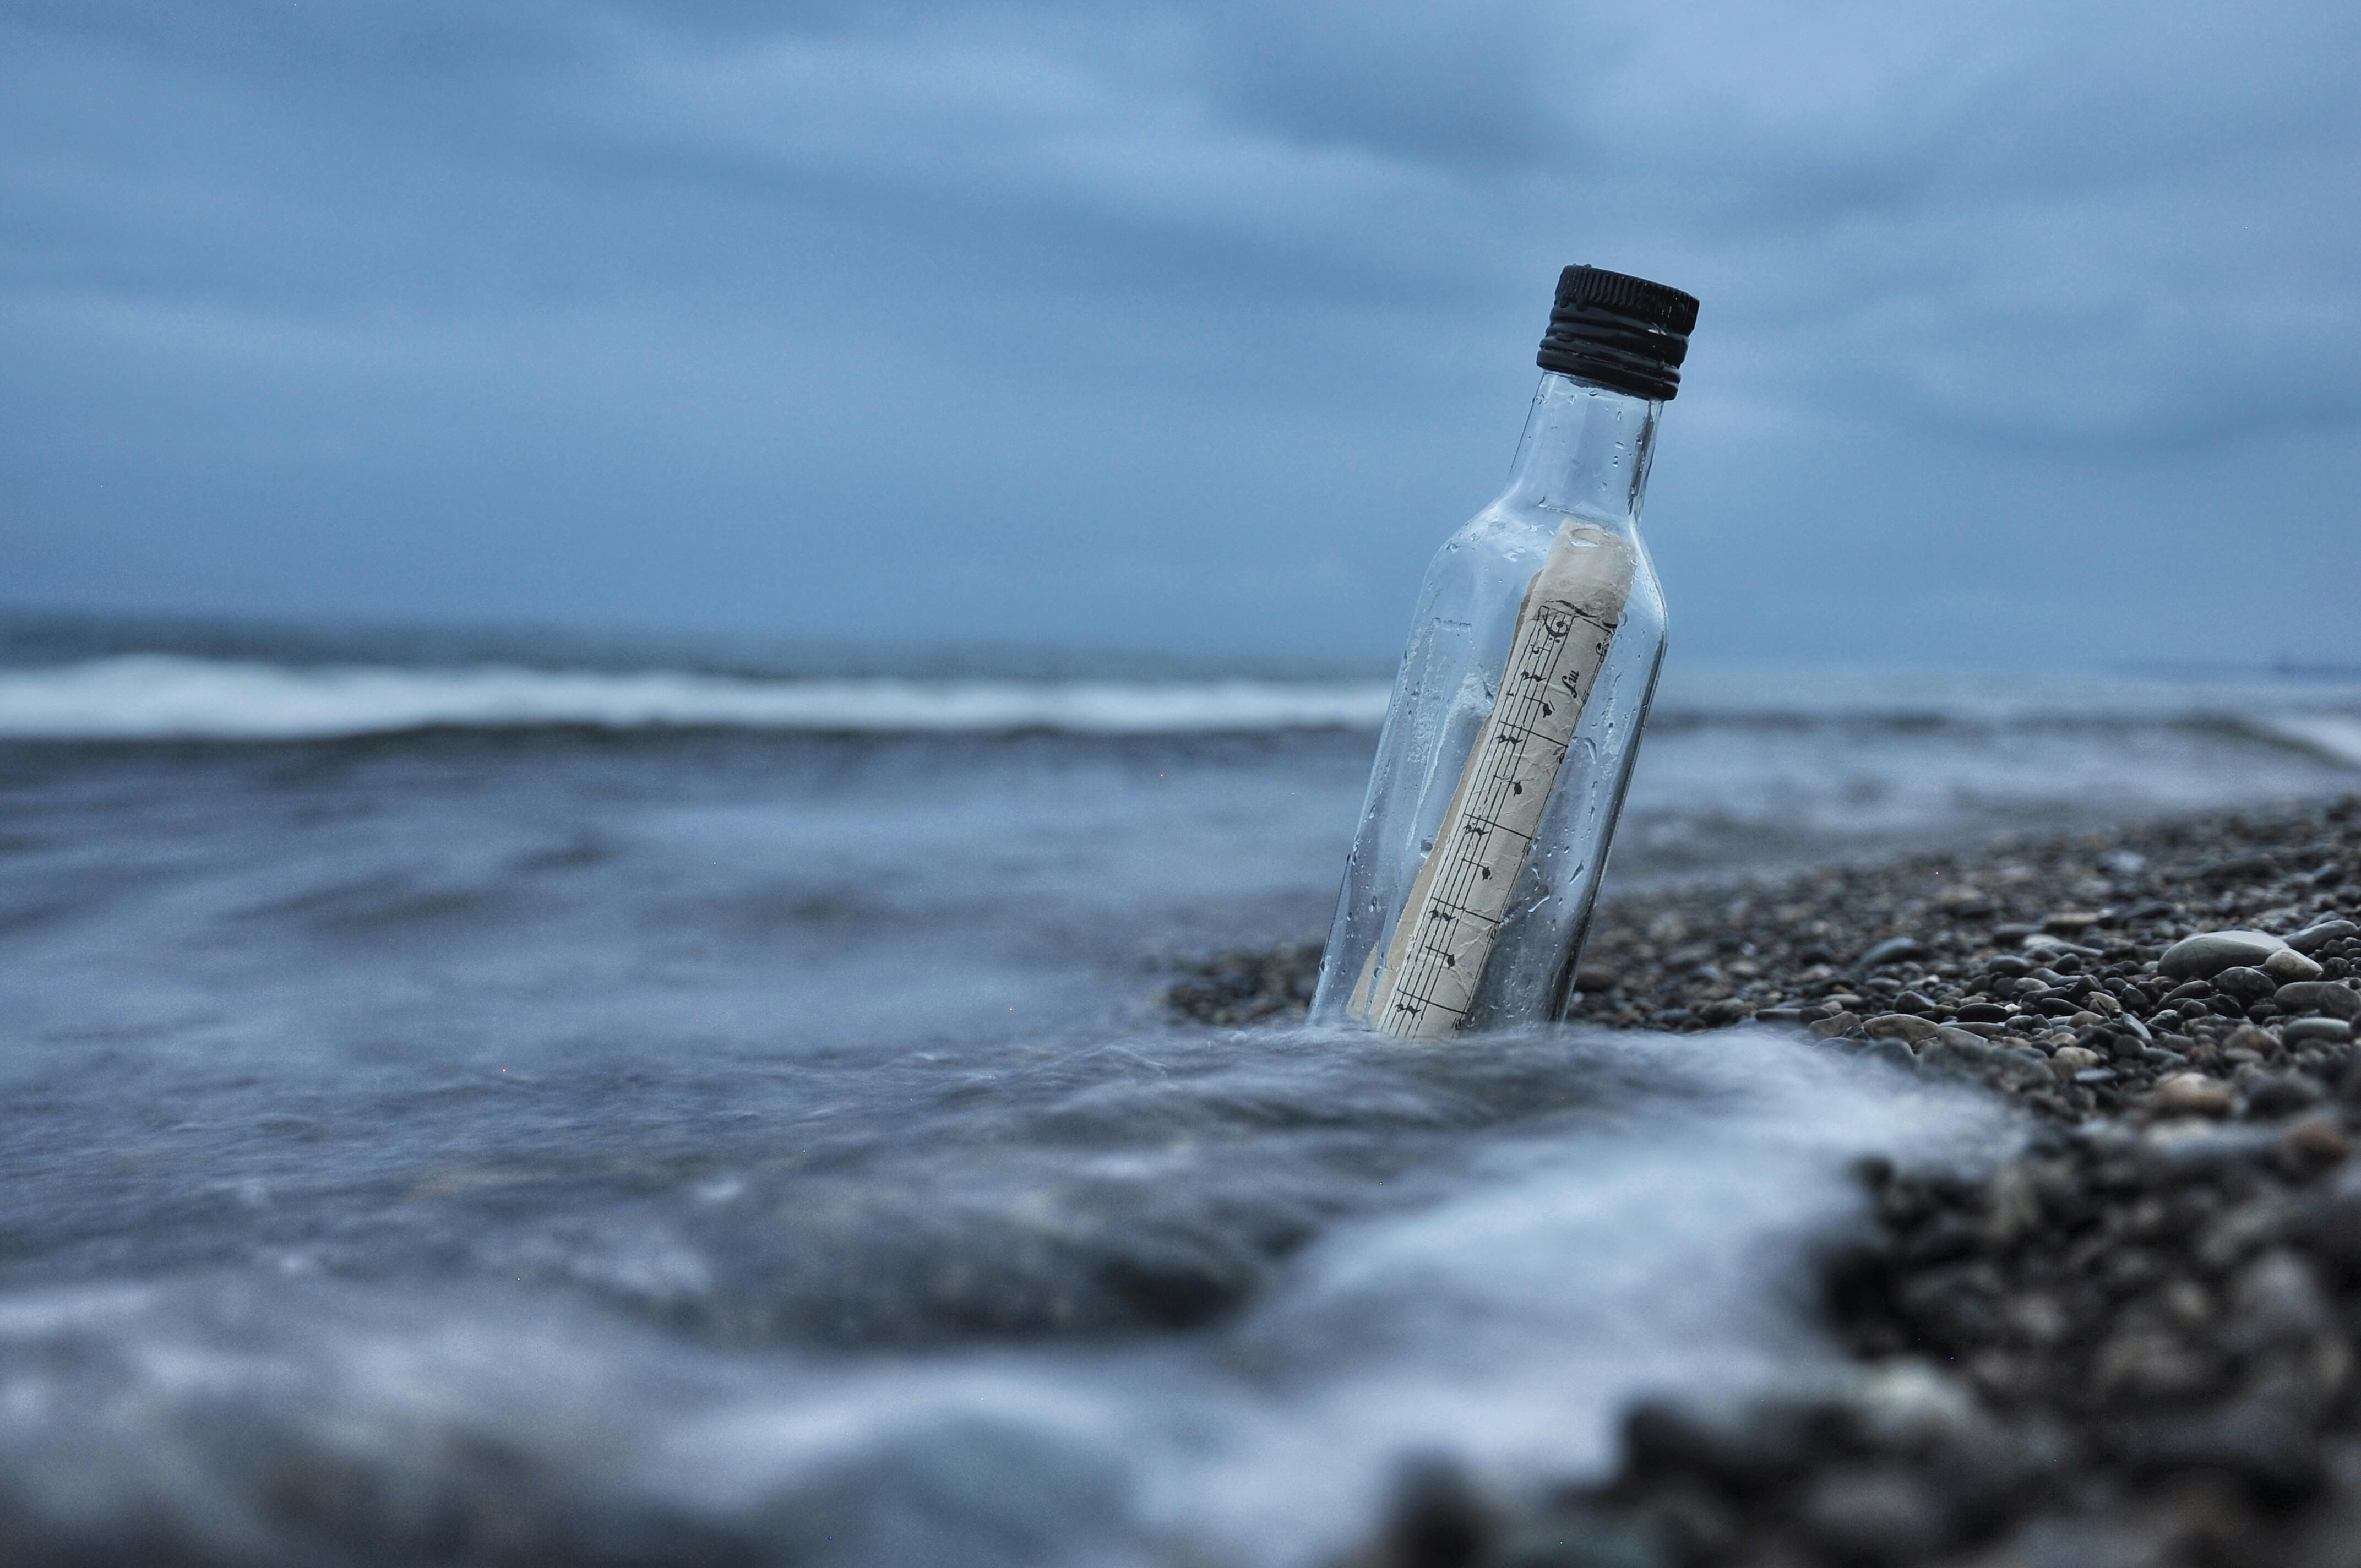 A bottle message in the ocean - Steemit.